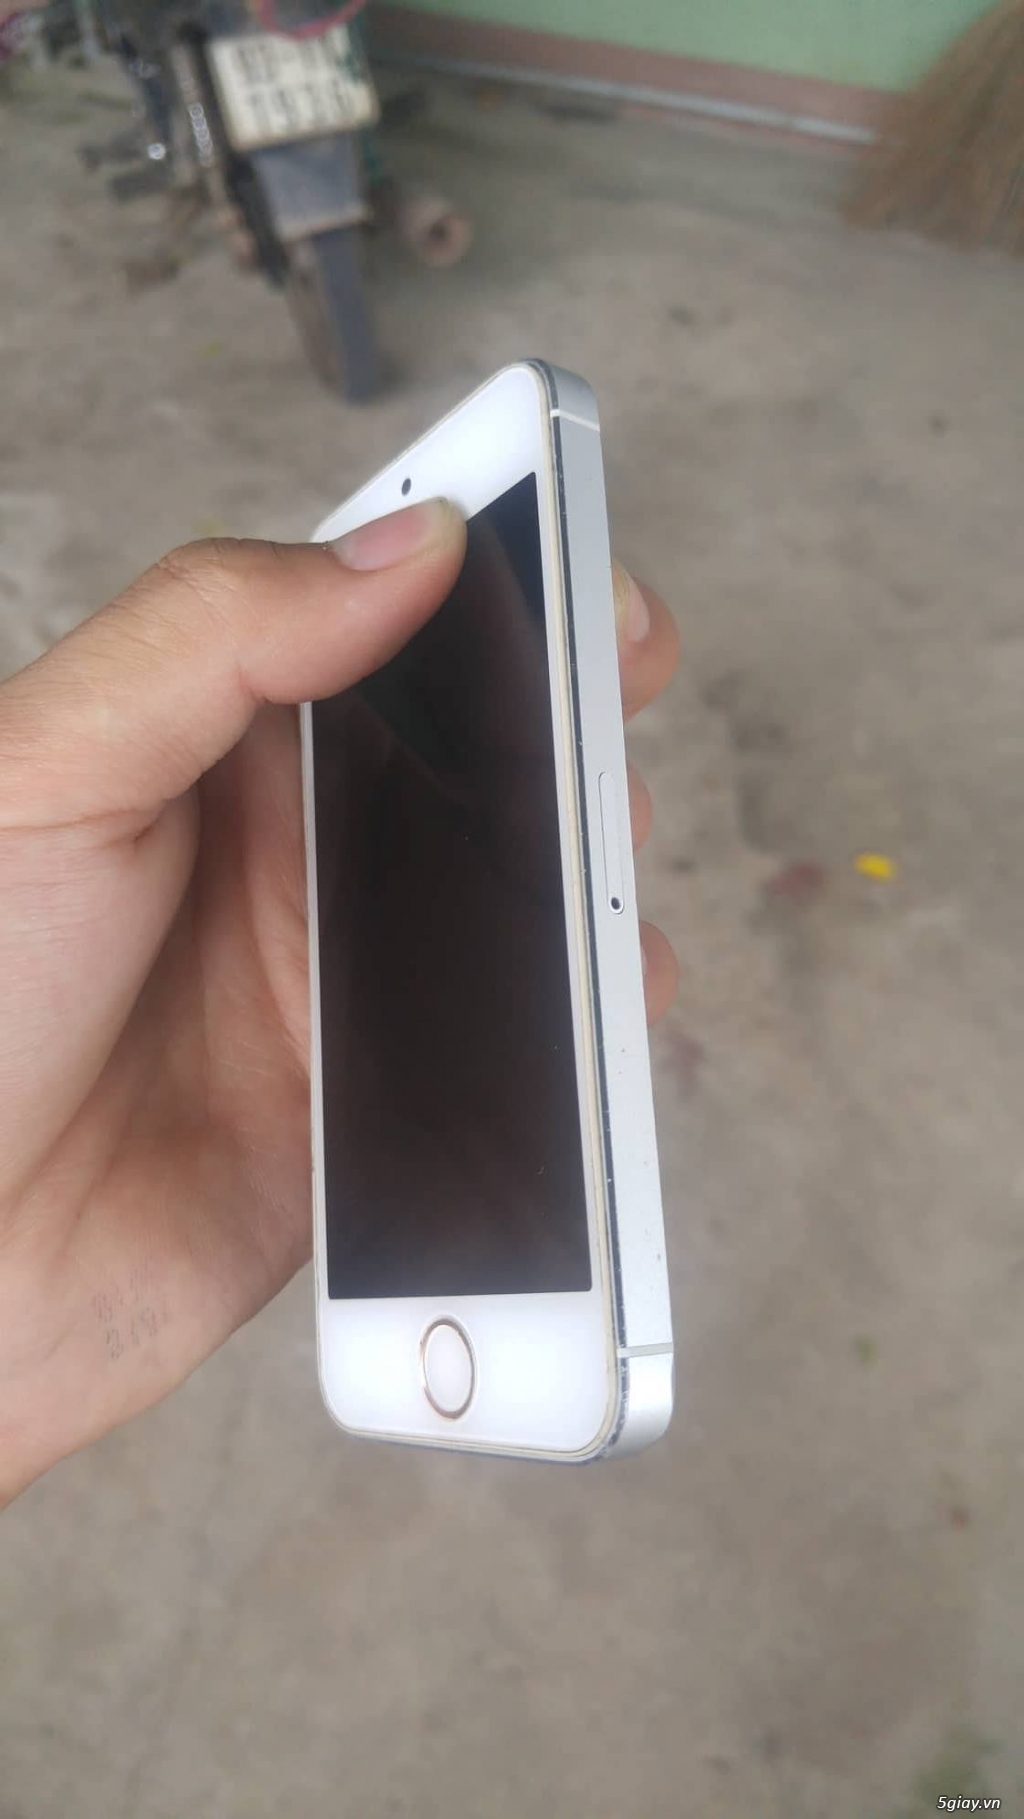 Iphone 5 lock nhật 32G trắng, ngoại hình ok - 1